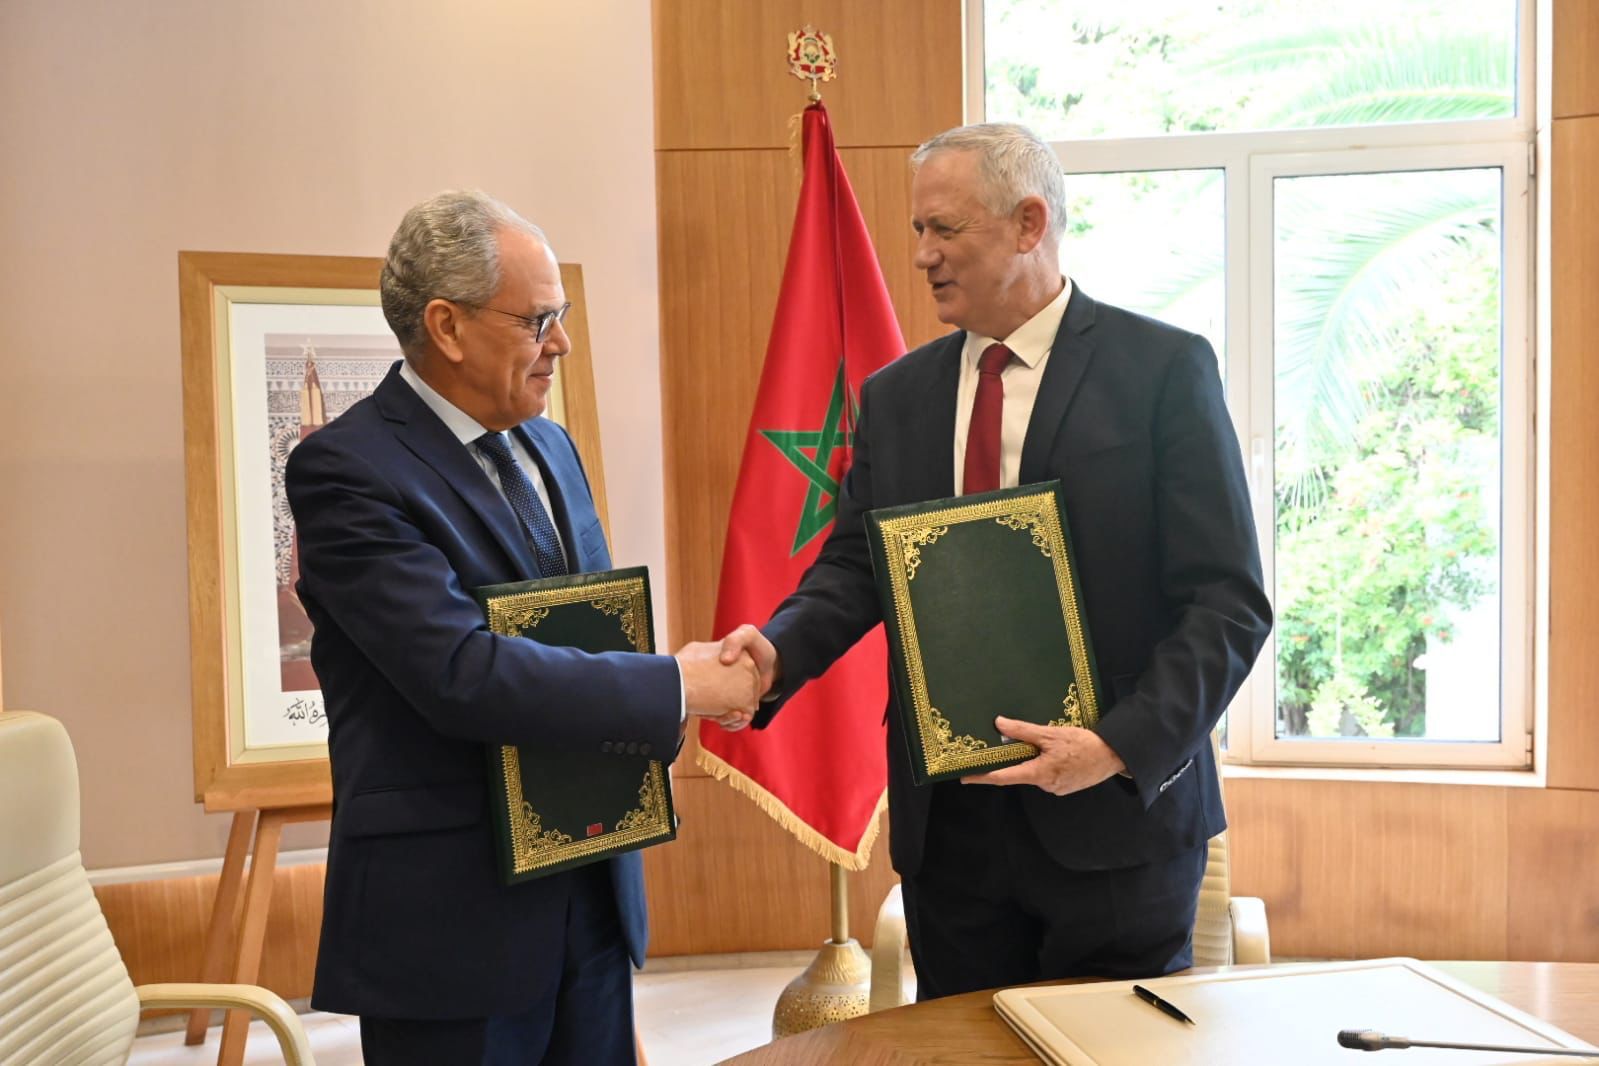 وسائل إعلام عبرية تؤكد بأن إسرائيل وقعت صفقة عسكرية ضخمة مع المغرب